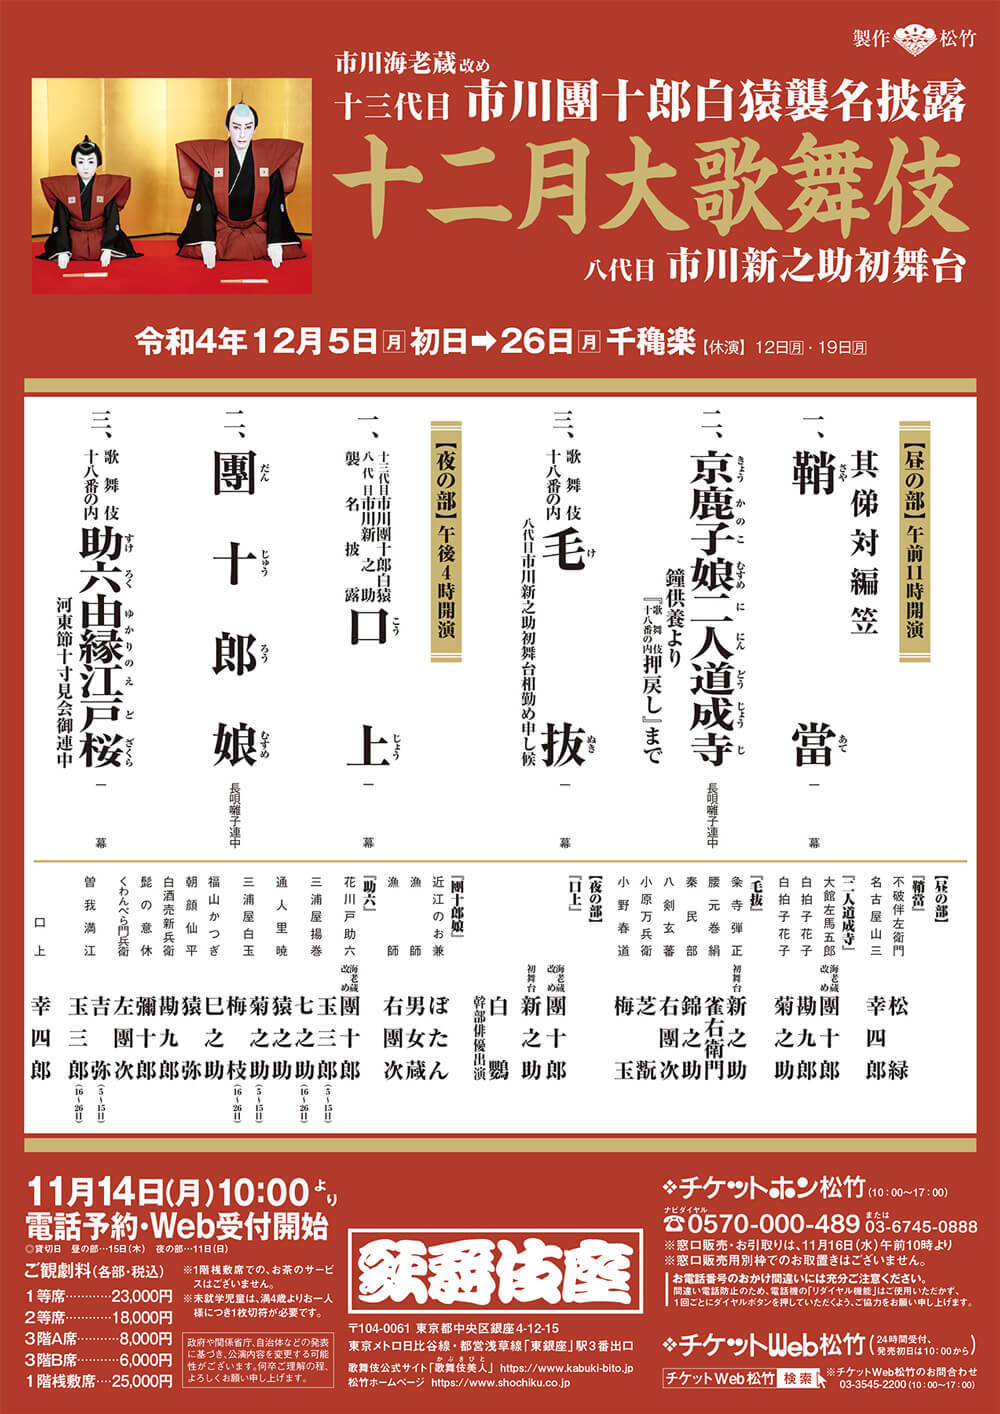 市川團十郎白猿襲名披露巡業、札幌公演チケット借りて出品してます